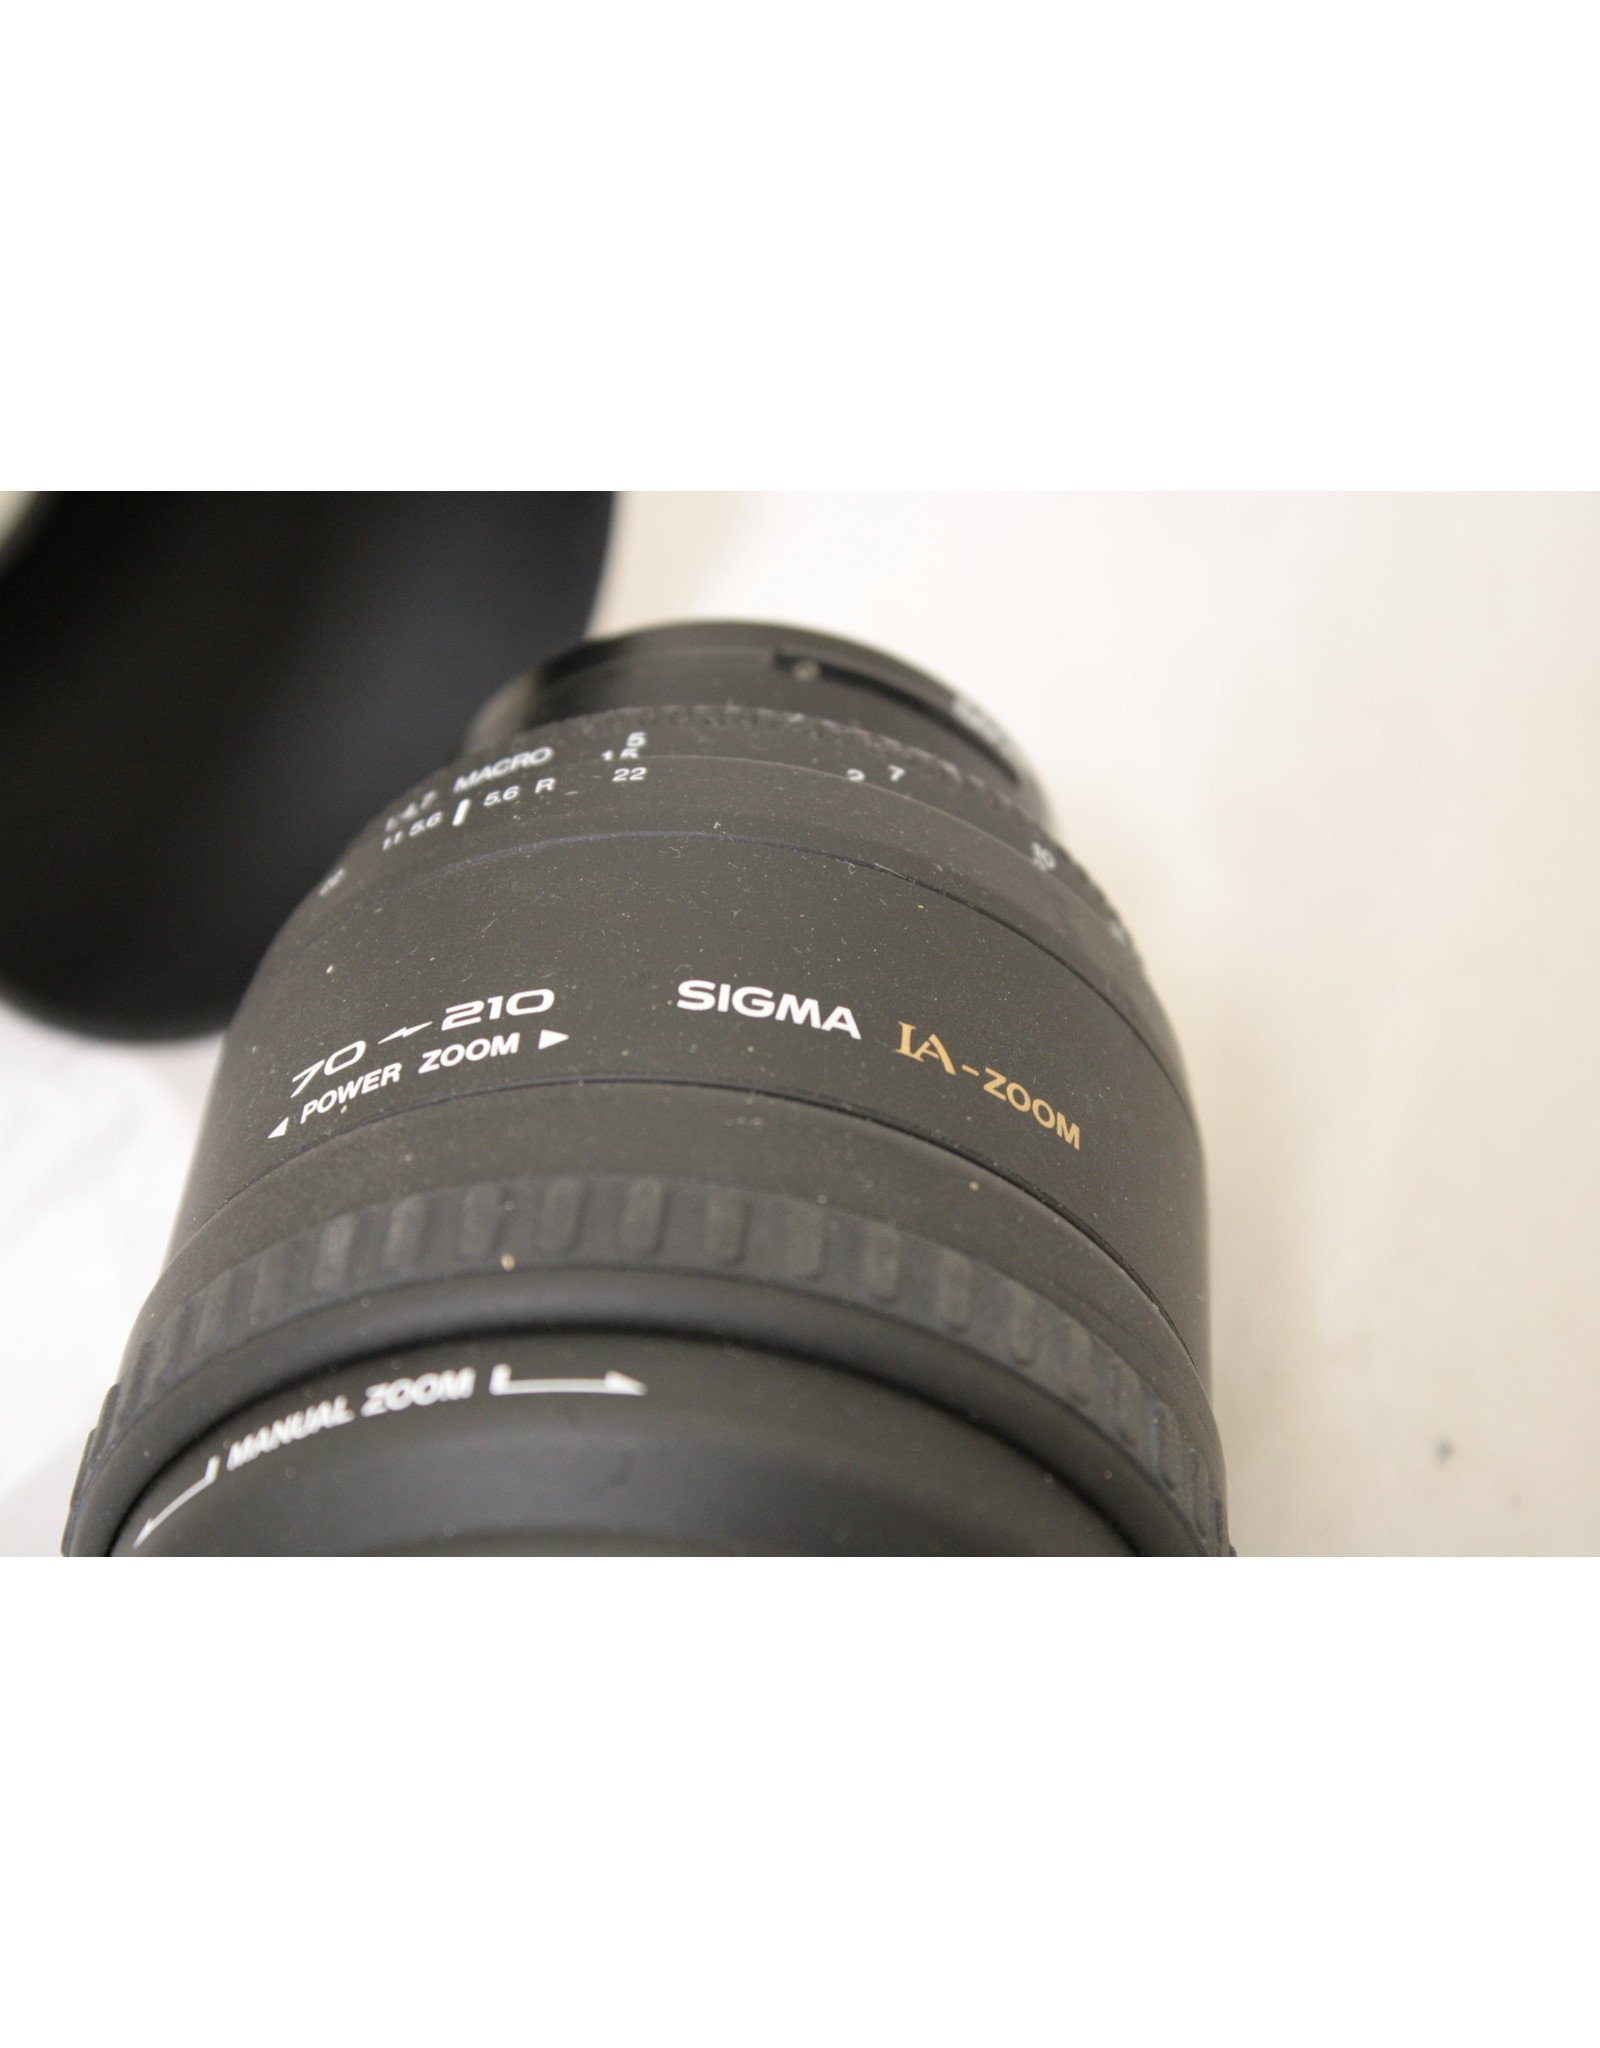 Sigma AF Power Zoom 70-210mm for Minolta AF Dynax and Maxxum xi